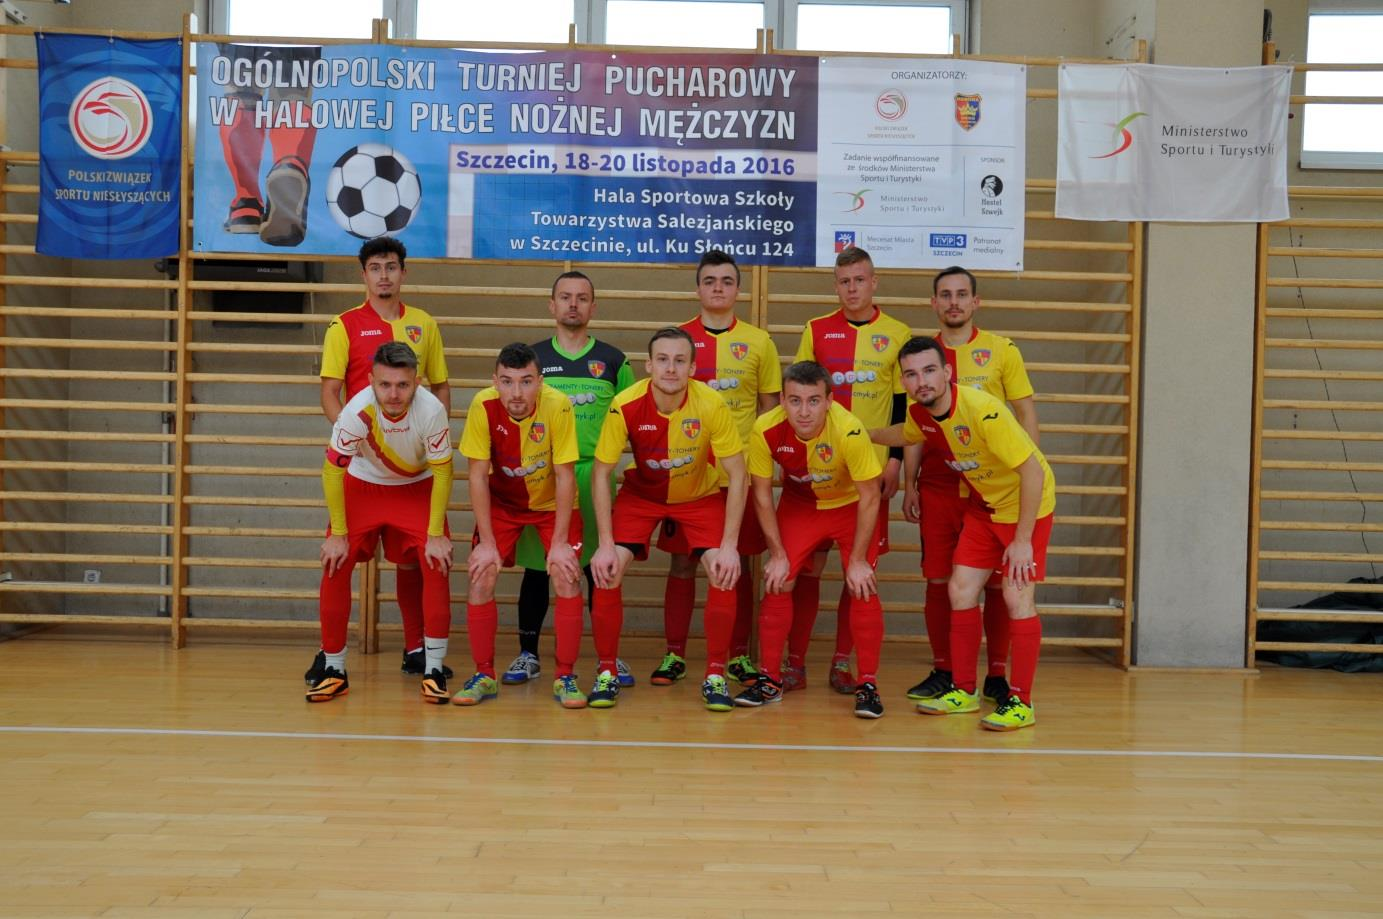 Zwycięska drużyna MAZOWSZE Warszawa Finaliści Ogólnopolskiego Turnieju Pucharowego w Halowej Piłce Nożnej Mężczyzn 2016 rok.